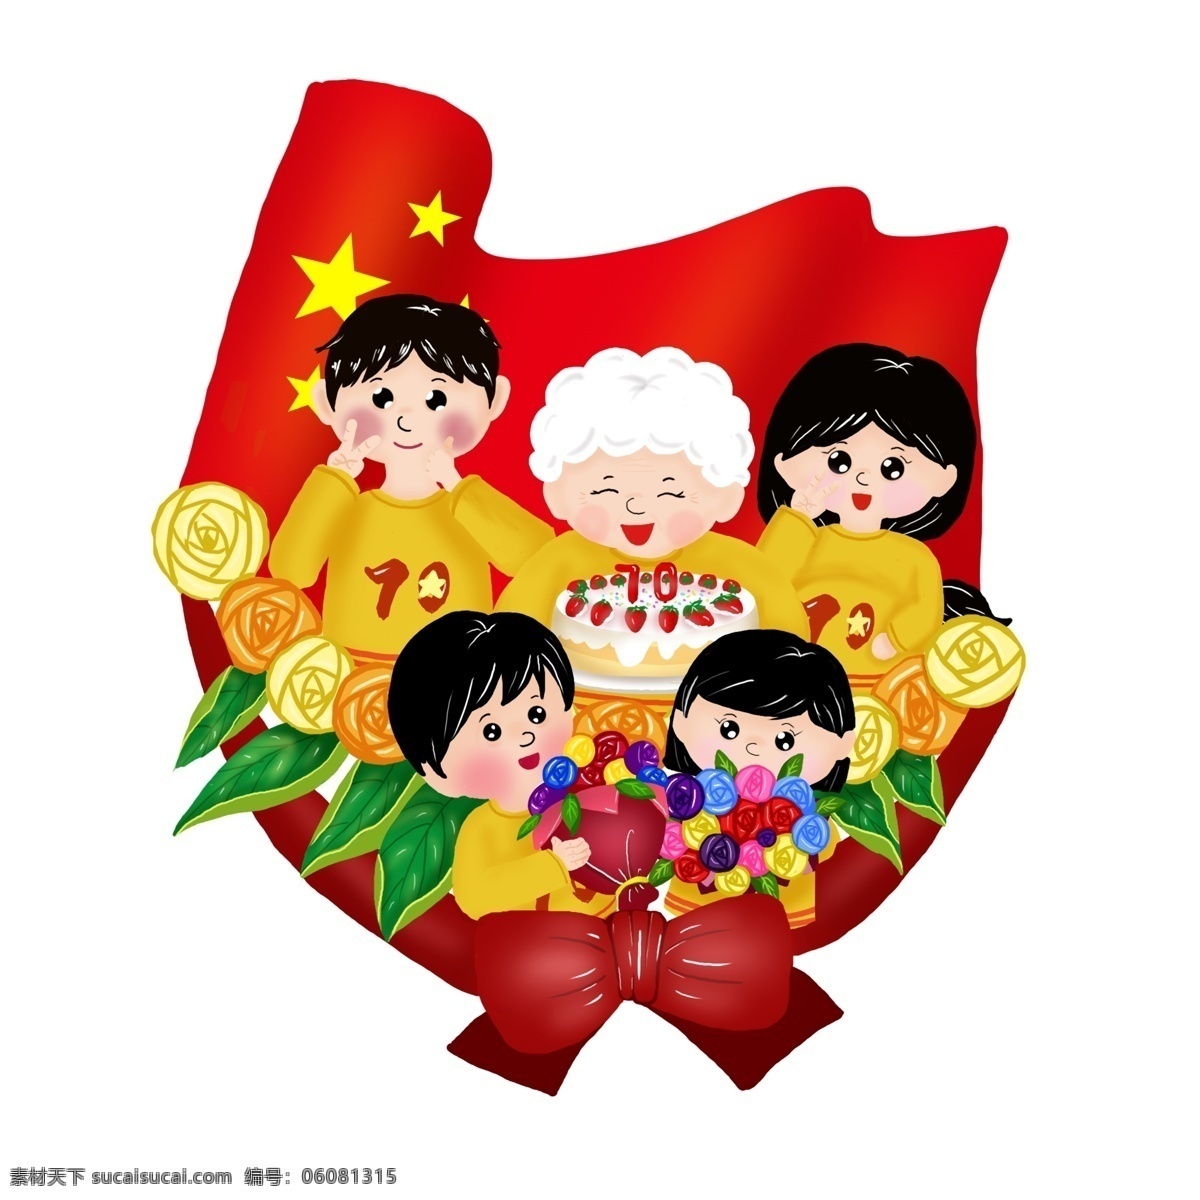 国庆节 周年 手绘 庆生 场景 商用 场景场景画 红旗 花朵 黄色 节日元素